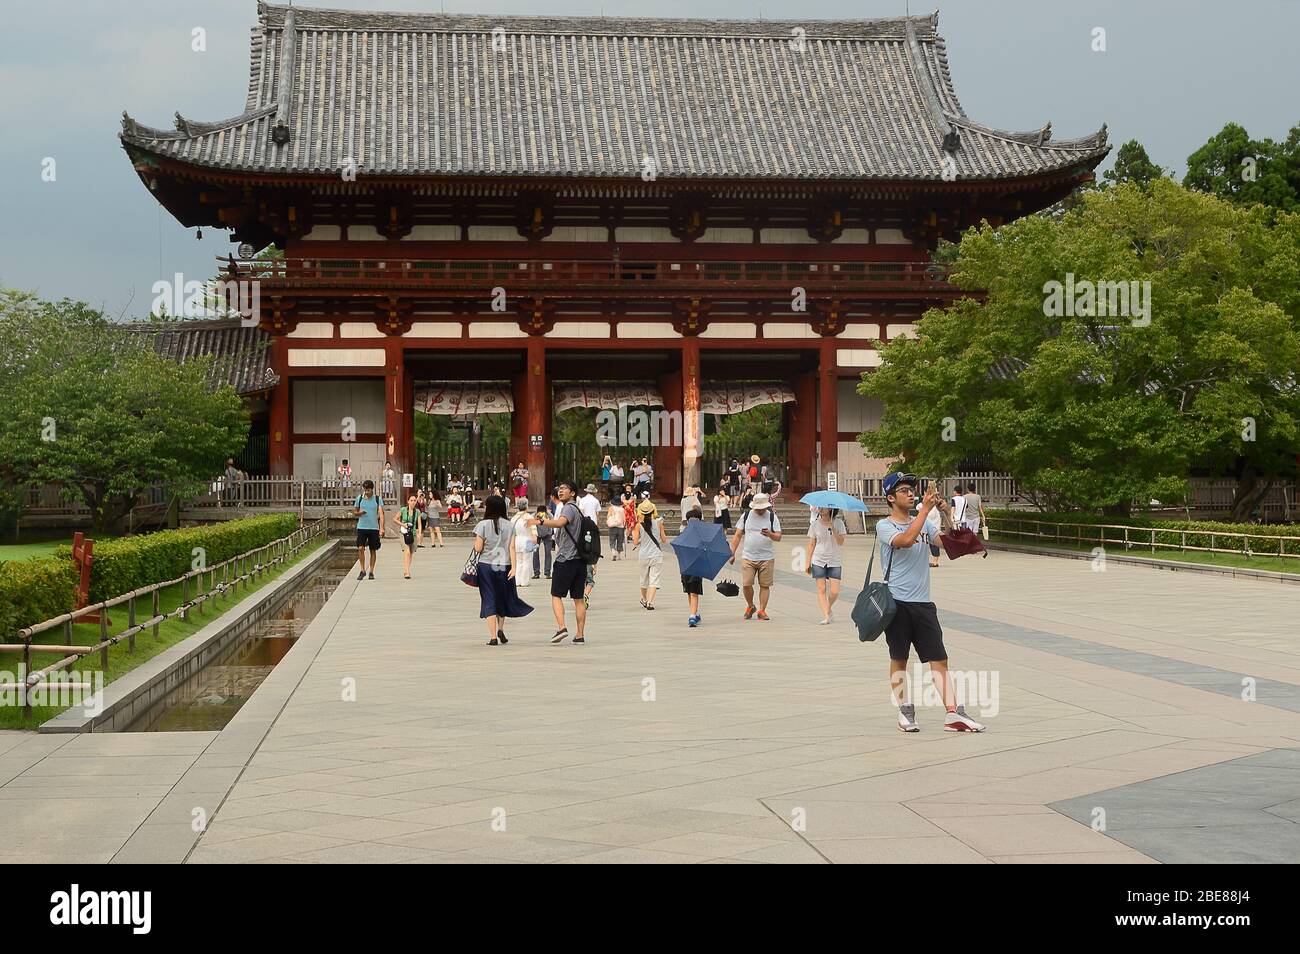 The Main Gate, Nara, Osaka, Japan Stock Photo